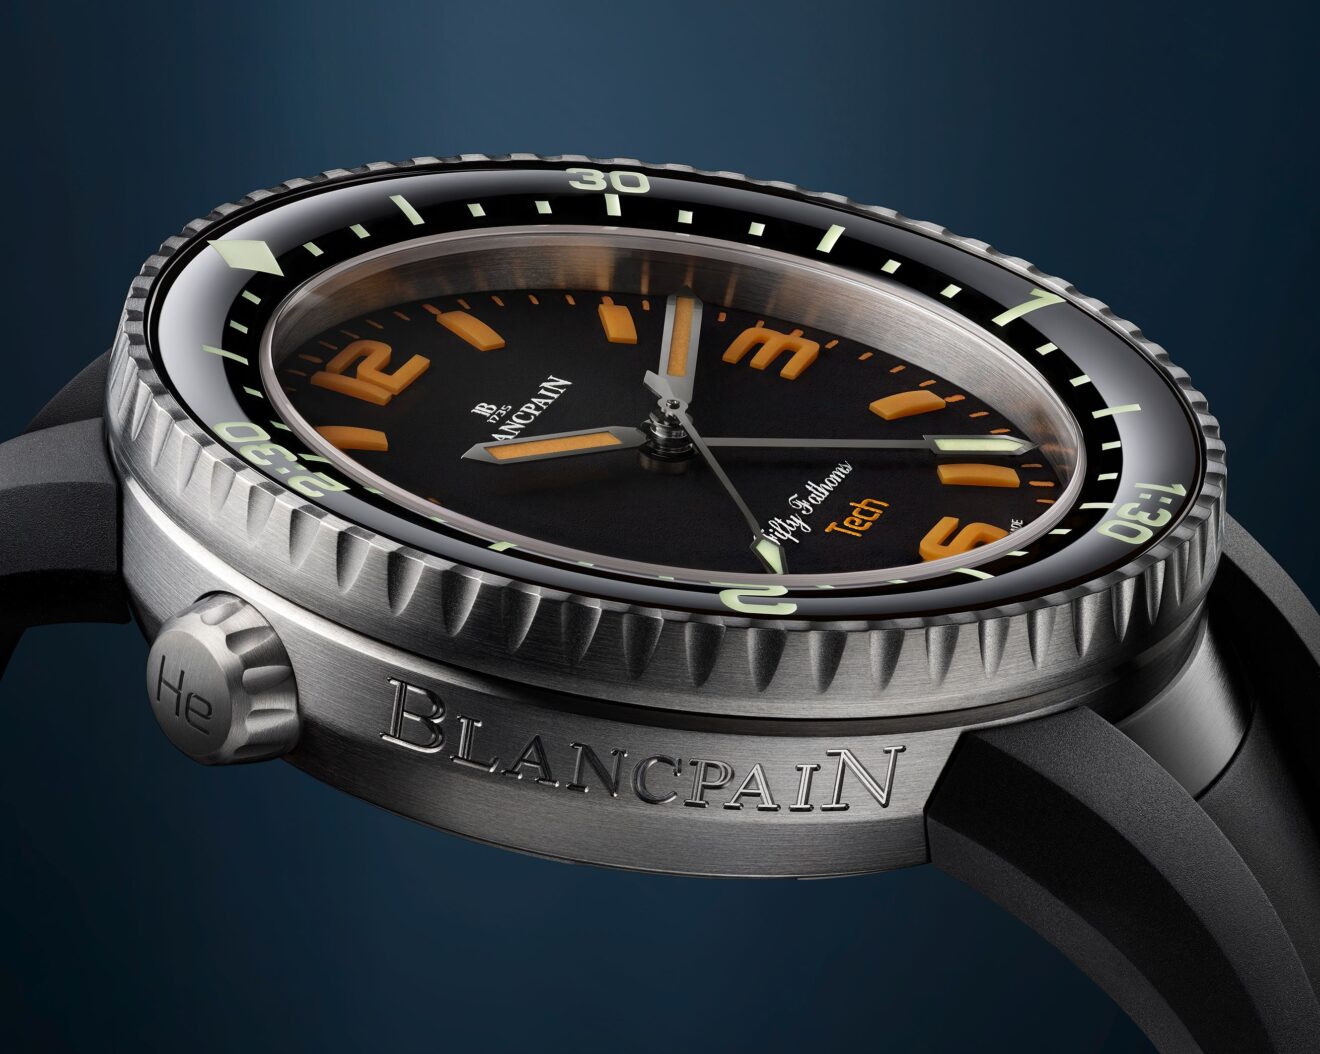 Tout savoir sur Blancpain : avis et plus belles montres